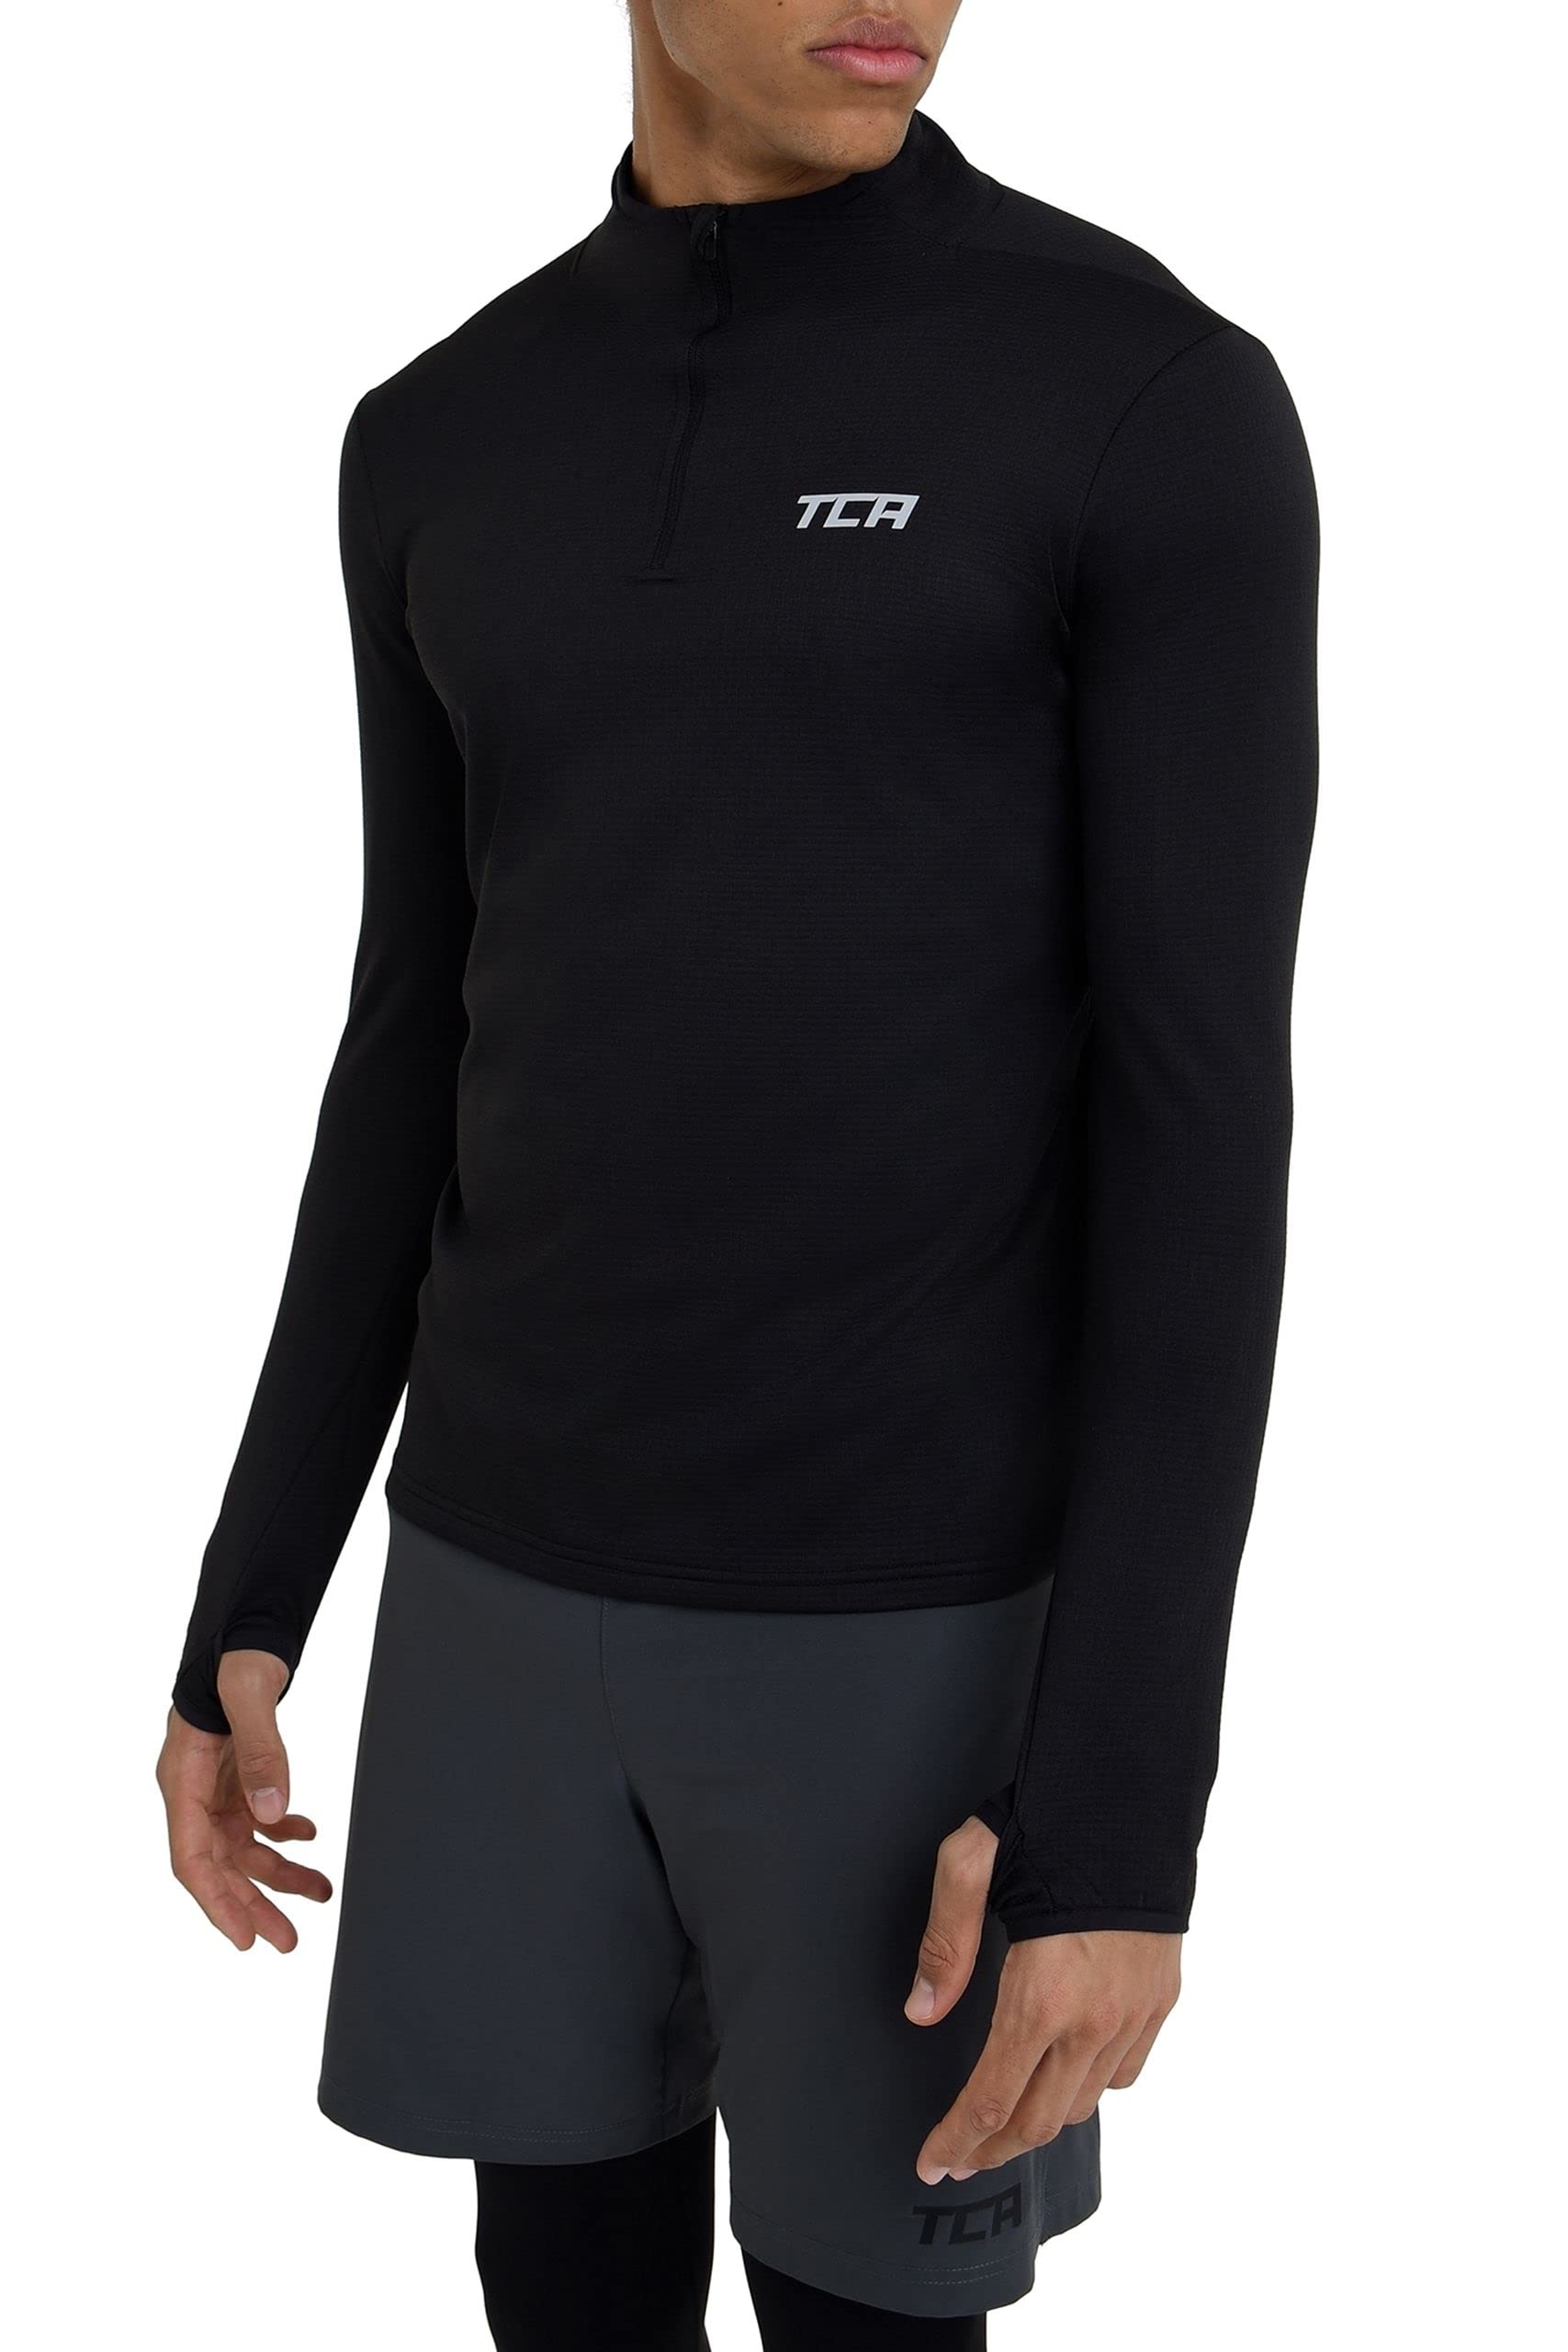 TCA Herren Cloud Fleece mit Brust Reißveschluss - Thermo Sporttop Laufshirt - Schwarz, S